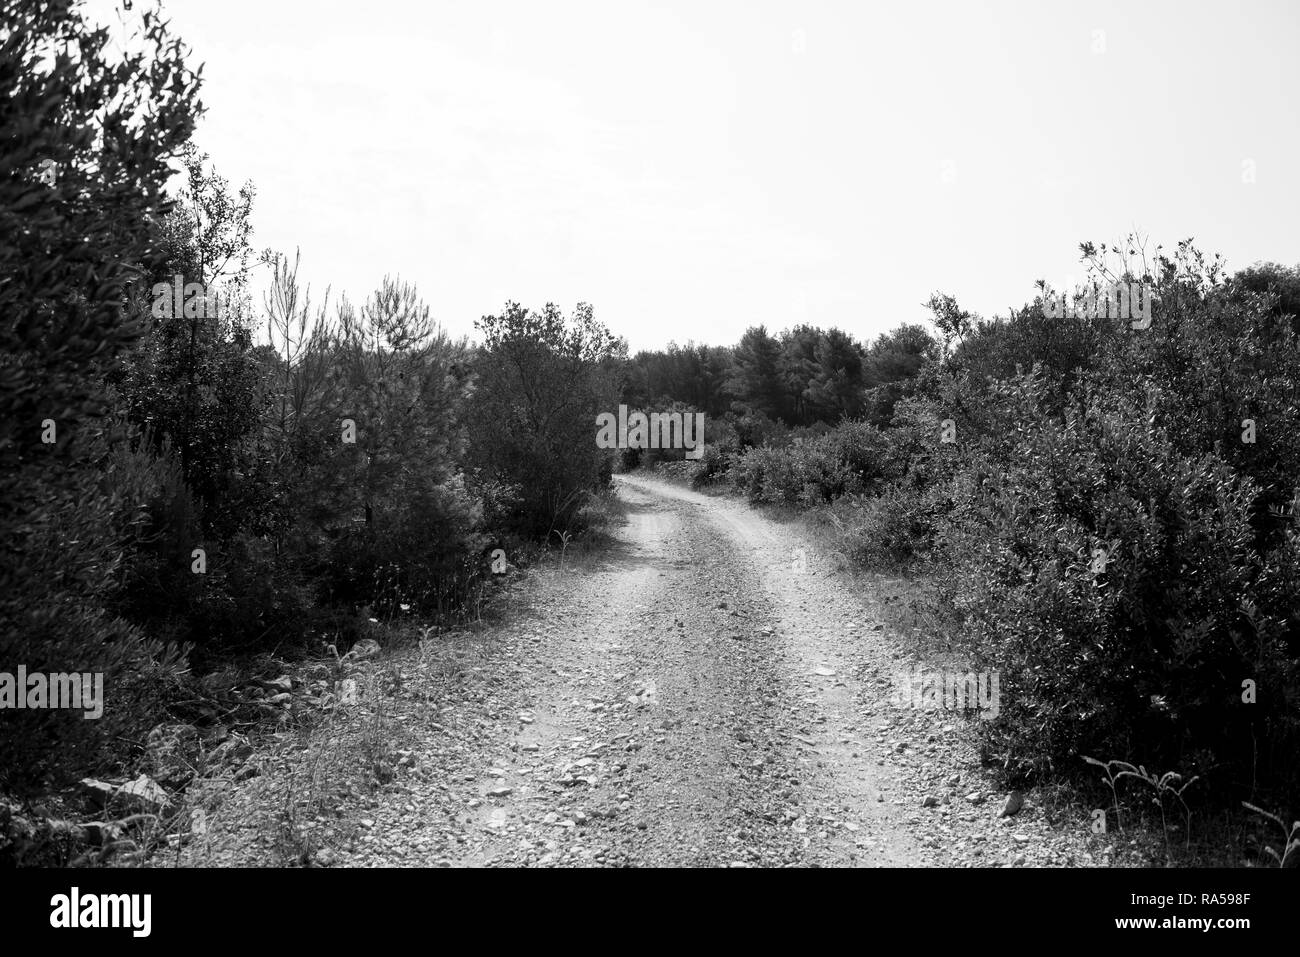 Image en noir et blanc d'une route poussiéreuse et vide macadam à travers désert et forêt de l'île croate de Brac. Creux de la route au cours de l'été nature Banque D'Images